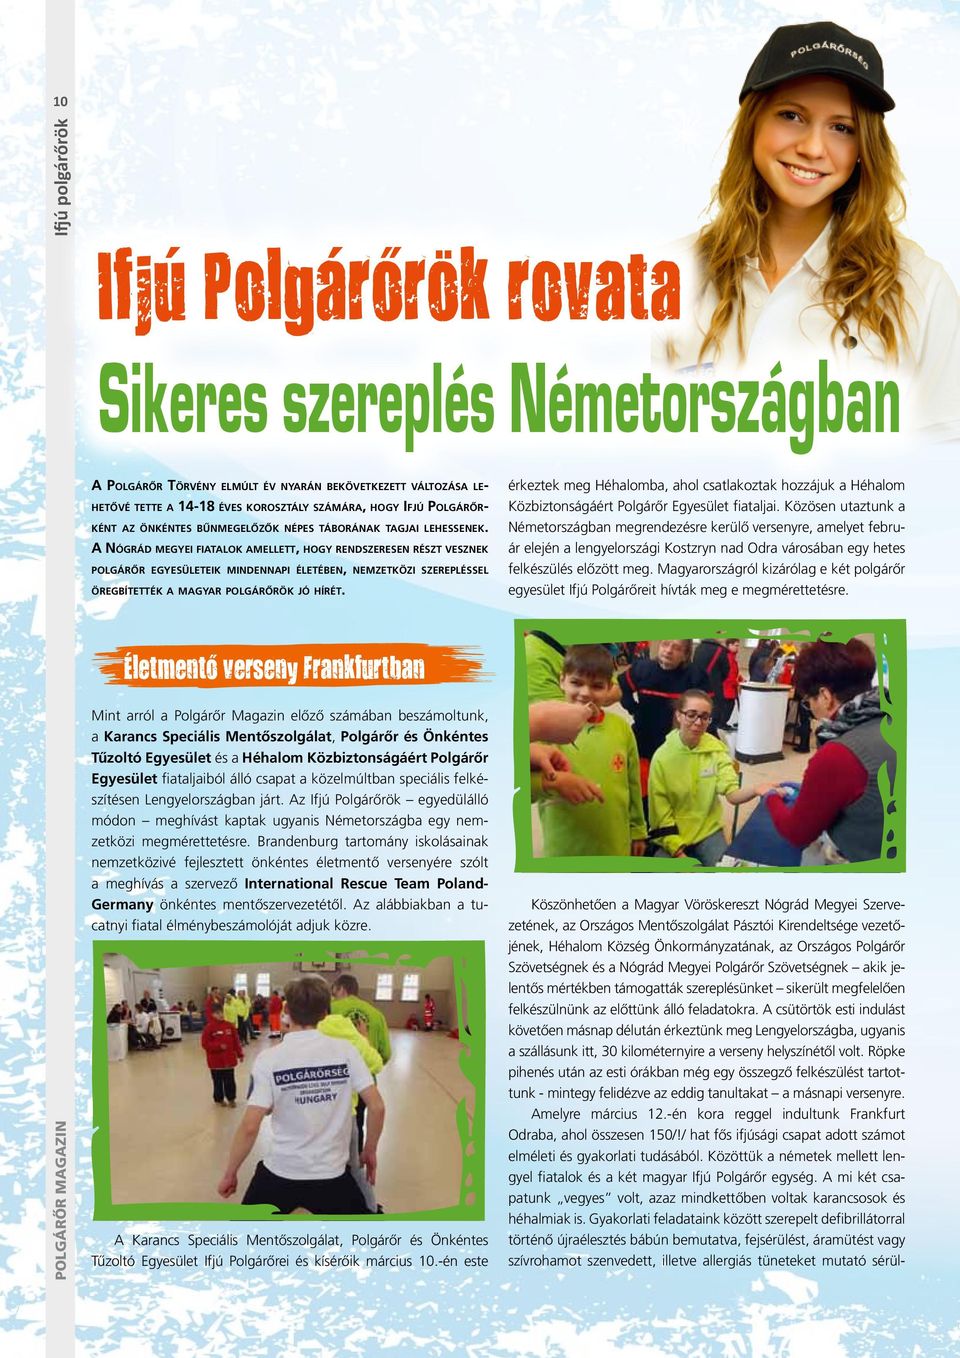 A Nógrád megyei fiatalok amellett, hogy rendszeresen részt vesznek polgárőr egyesületeik mindennapi életében, nemzetközi szerepléssel öregbítették a magyar polgárőrök jó hírét.